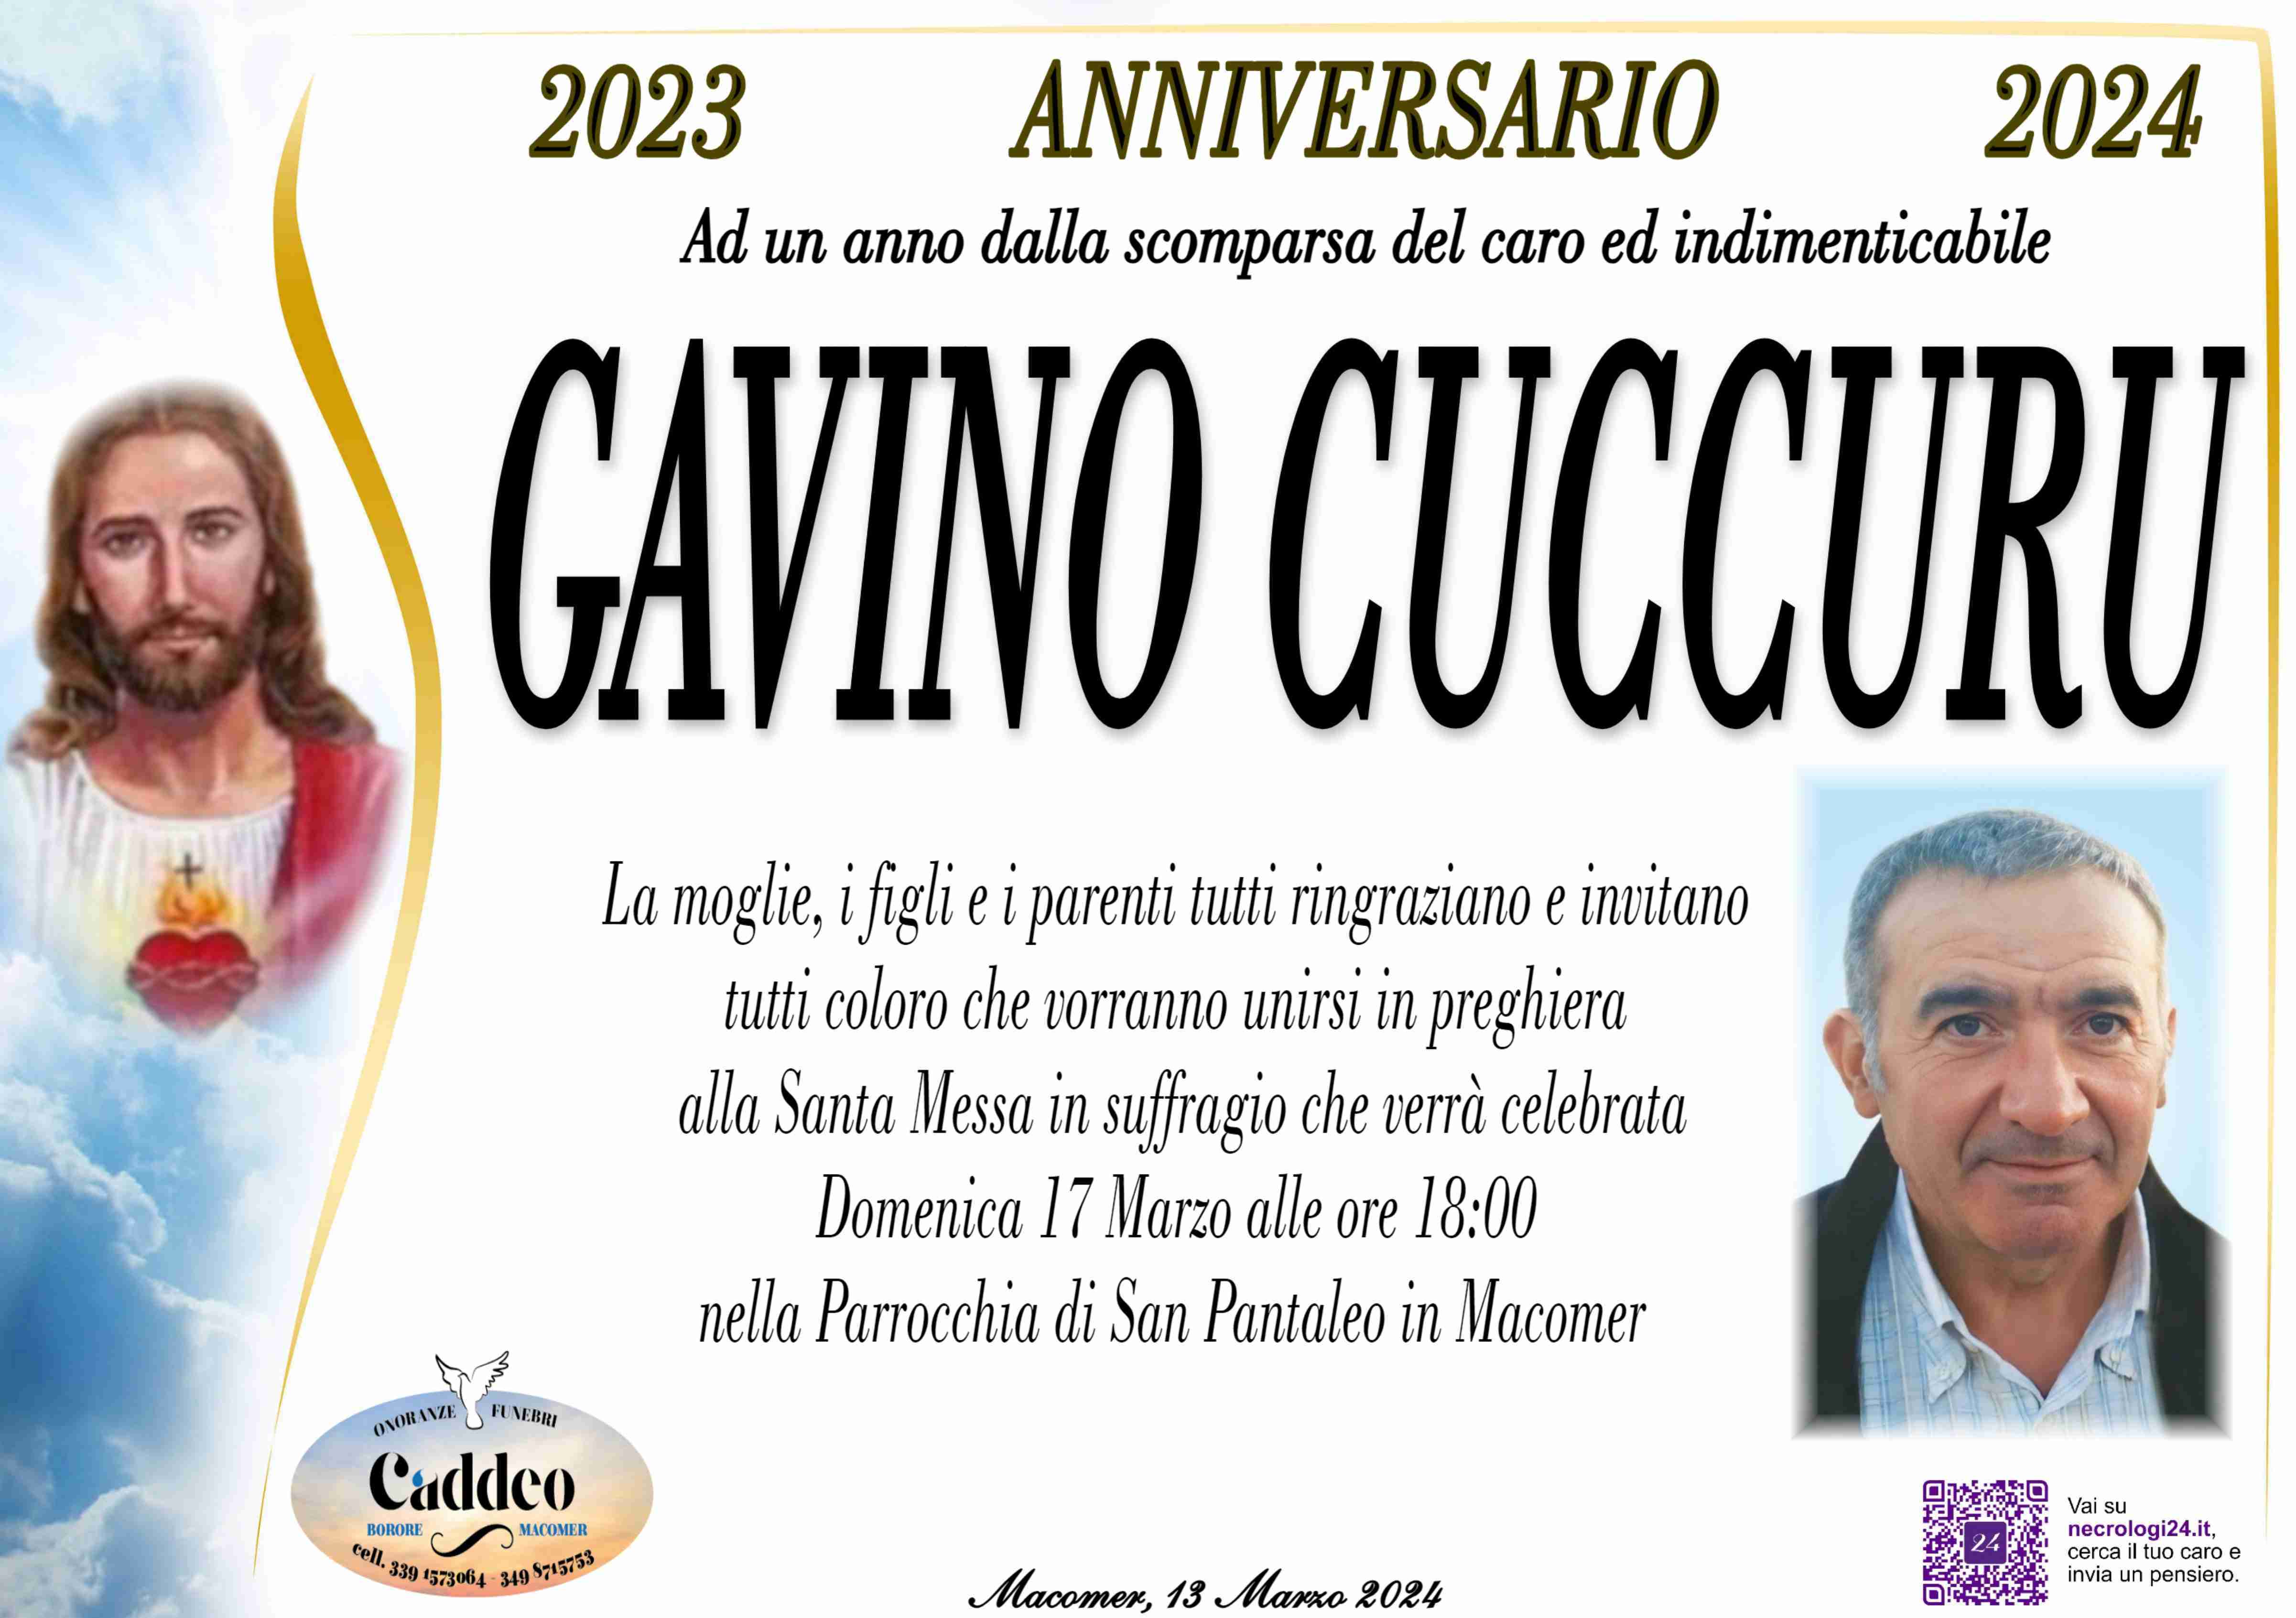 Gavino Cuccuru